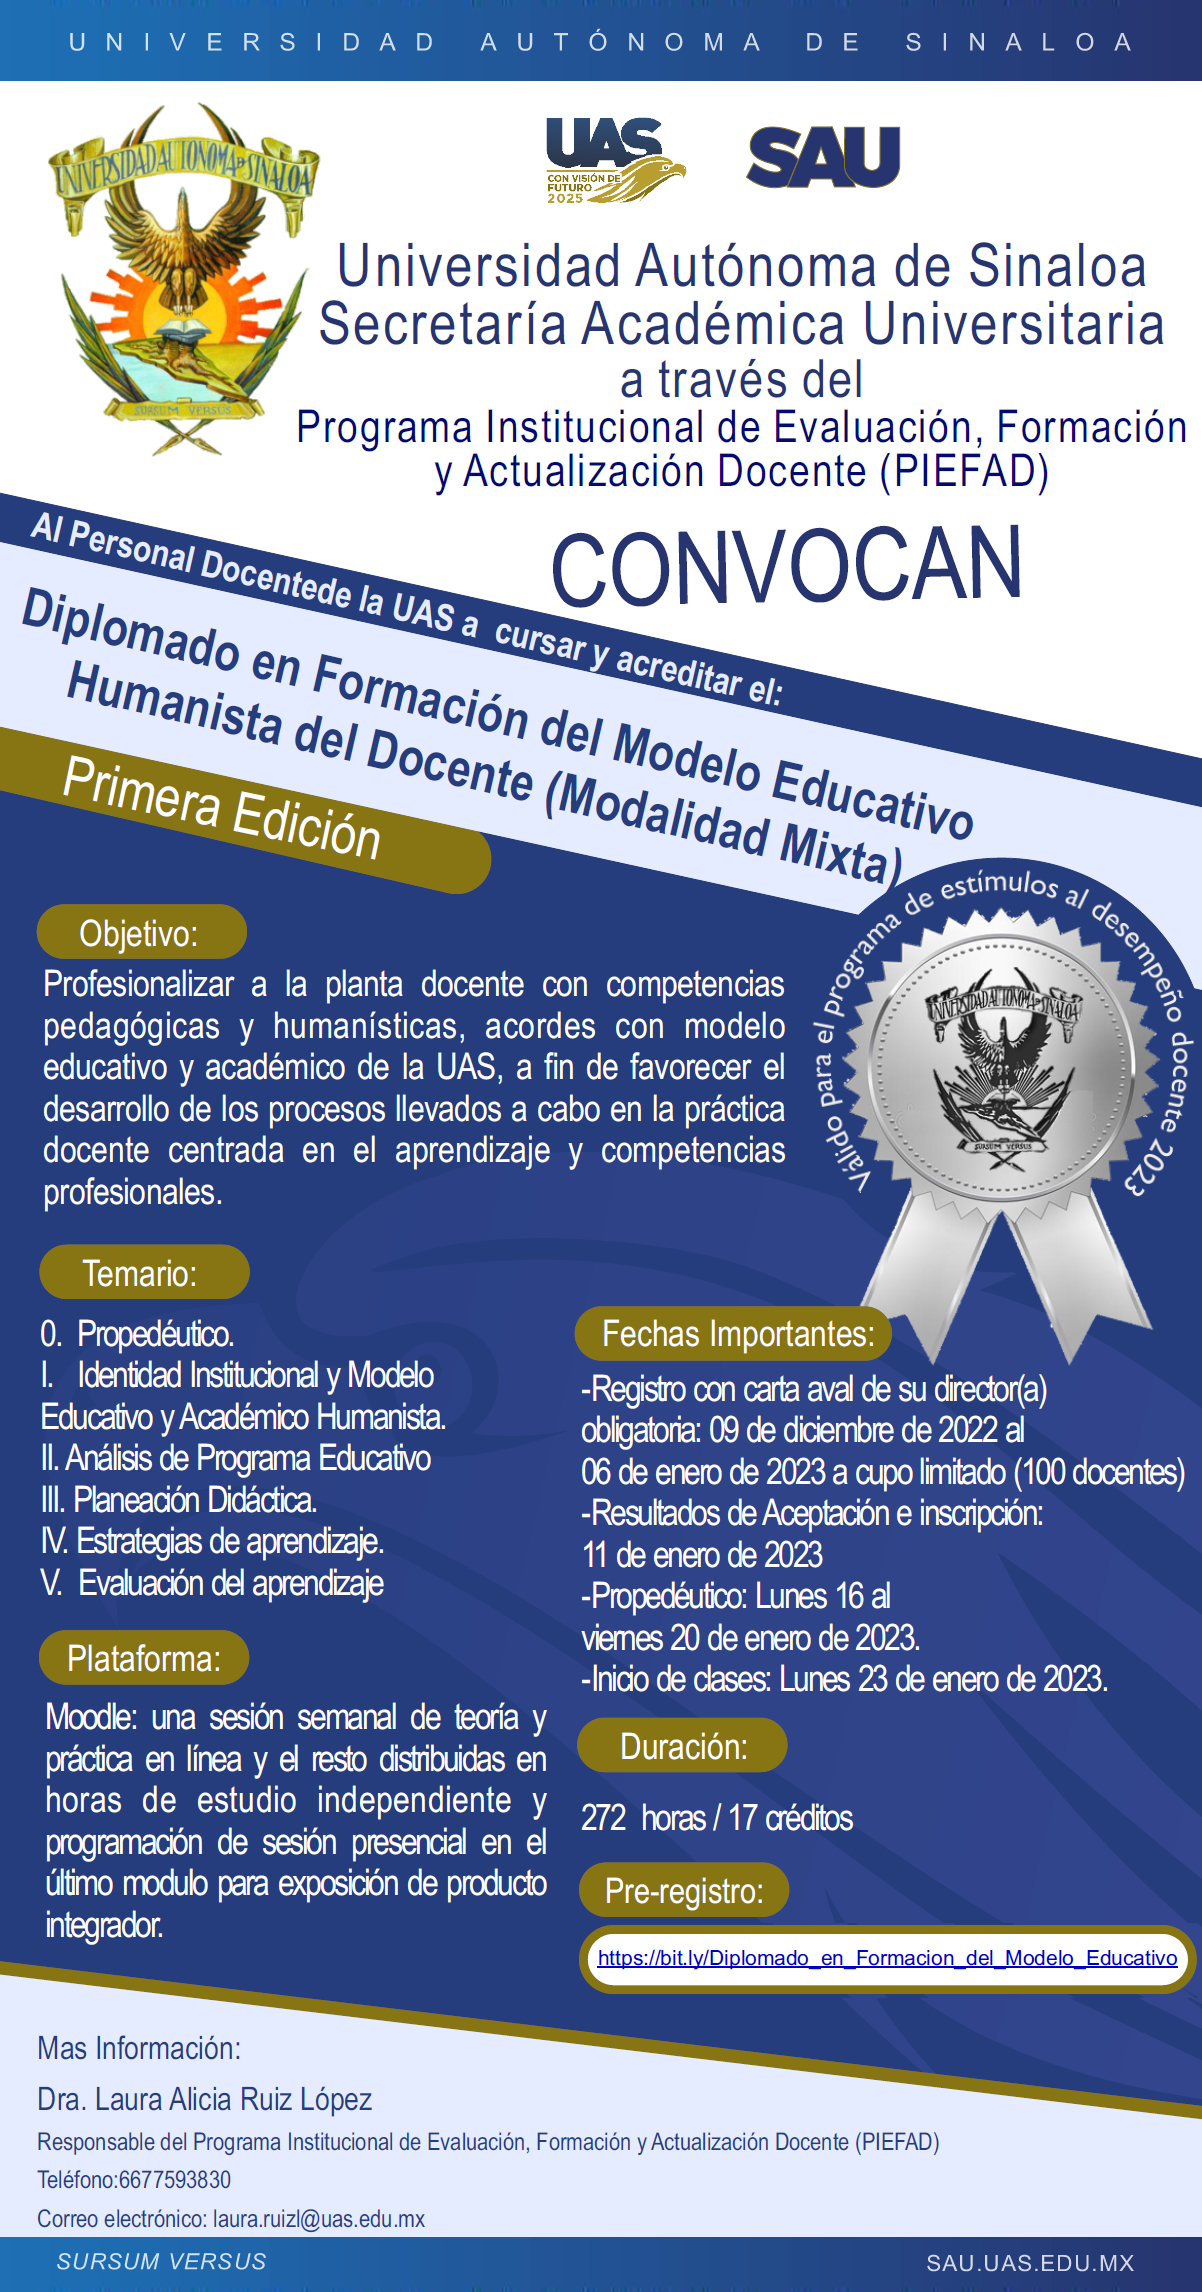 Diplomado en Formación del Modelo Educativo Humanista del Docente (Modalidad Mixta) 1era. Edición, 2023